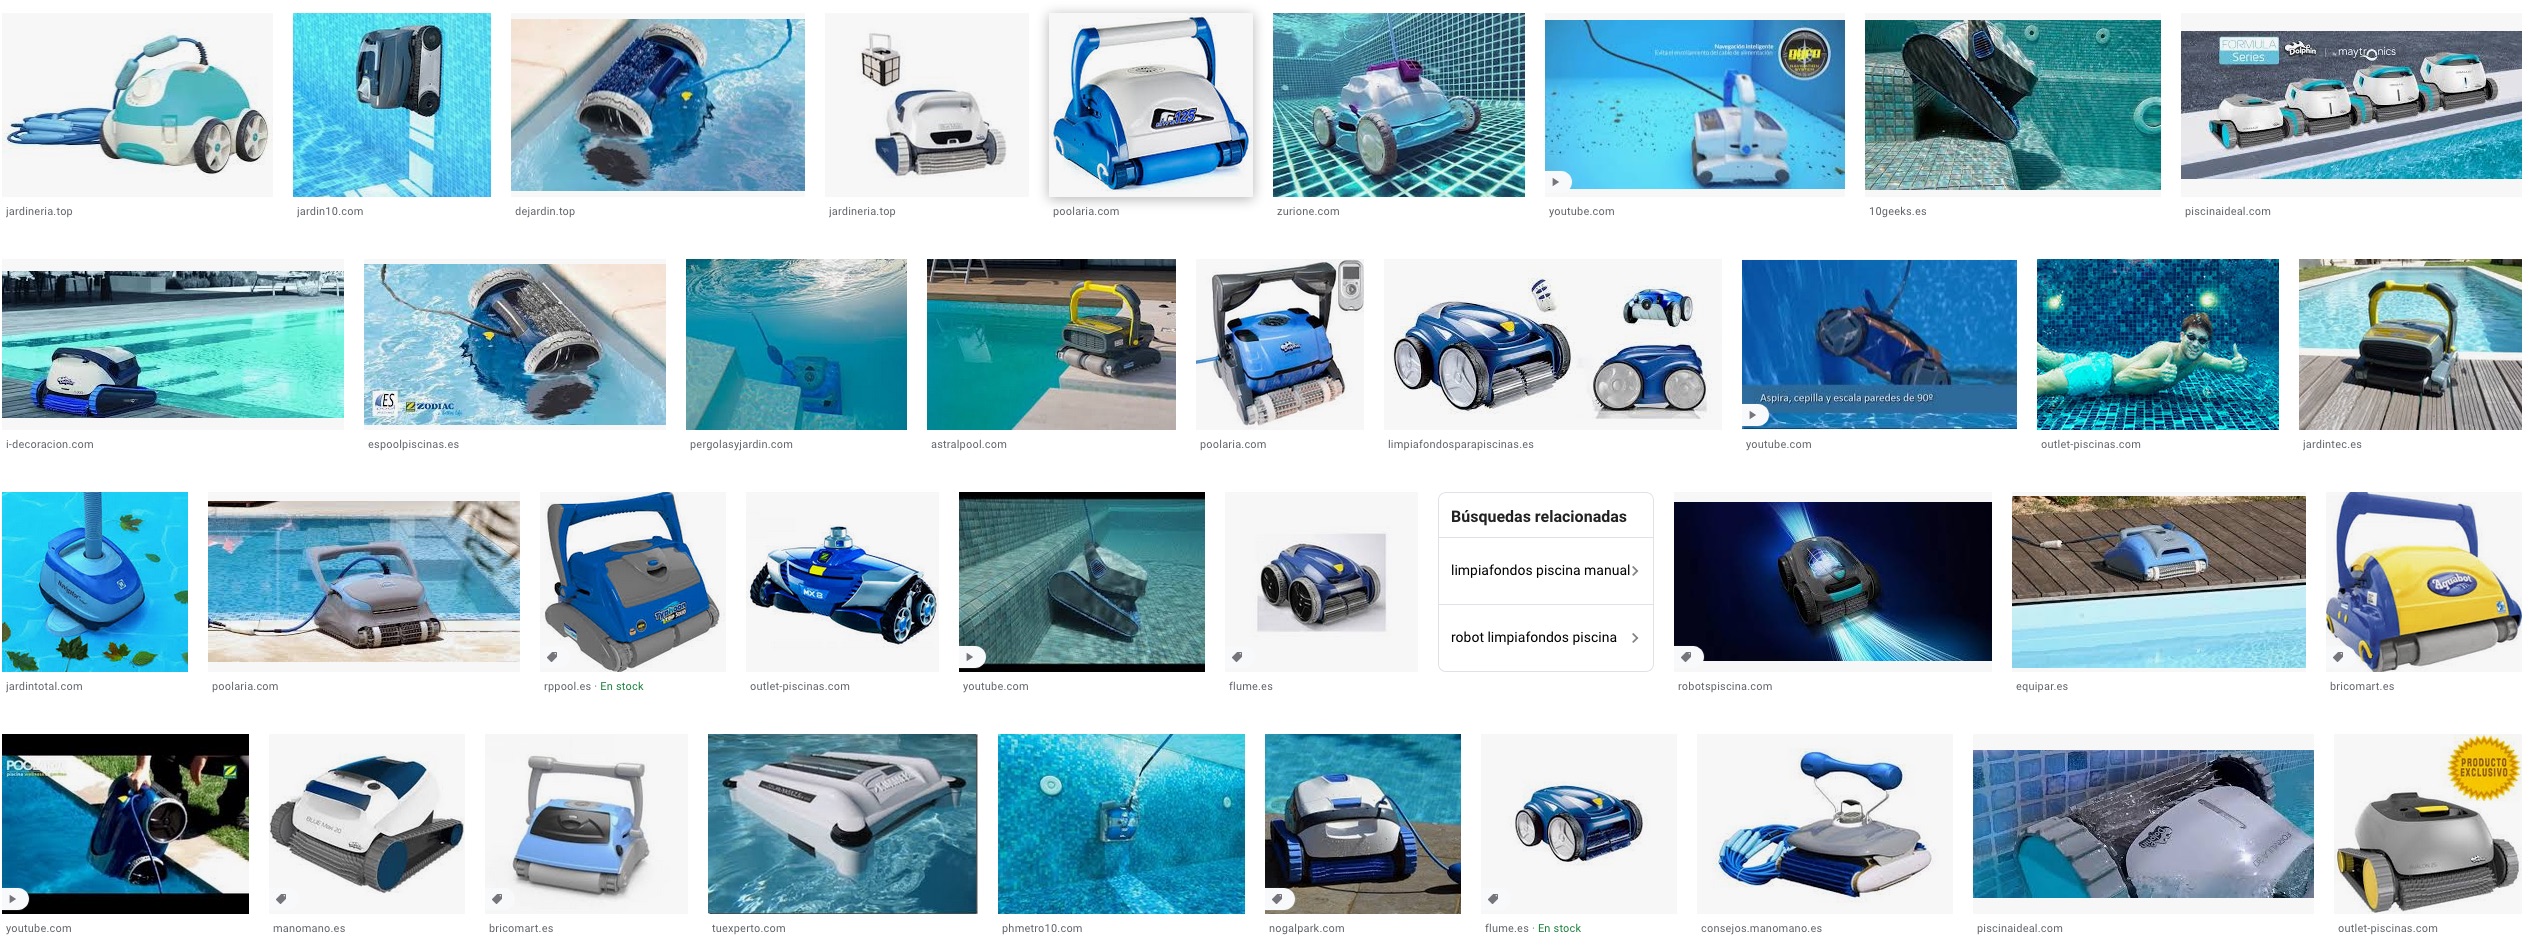 Los mejores robots de piscina